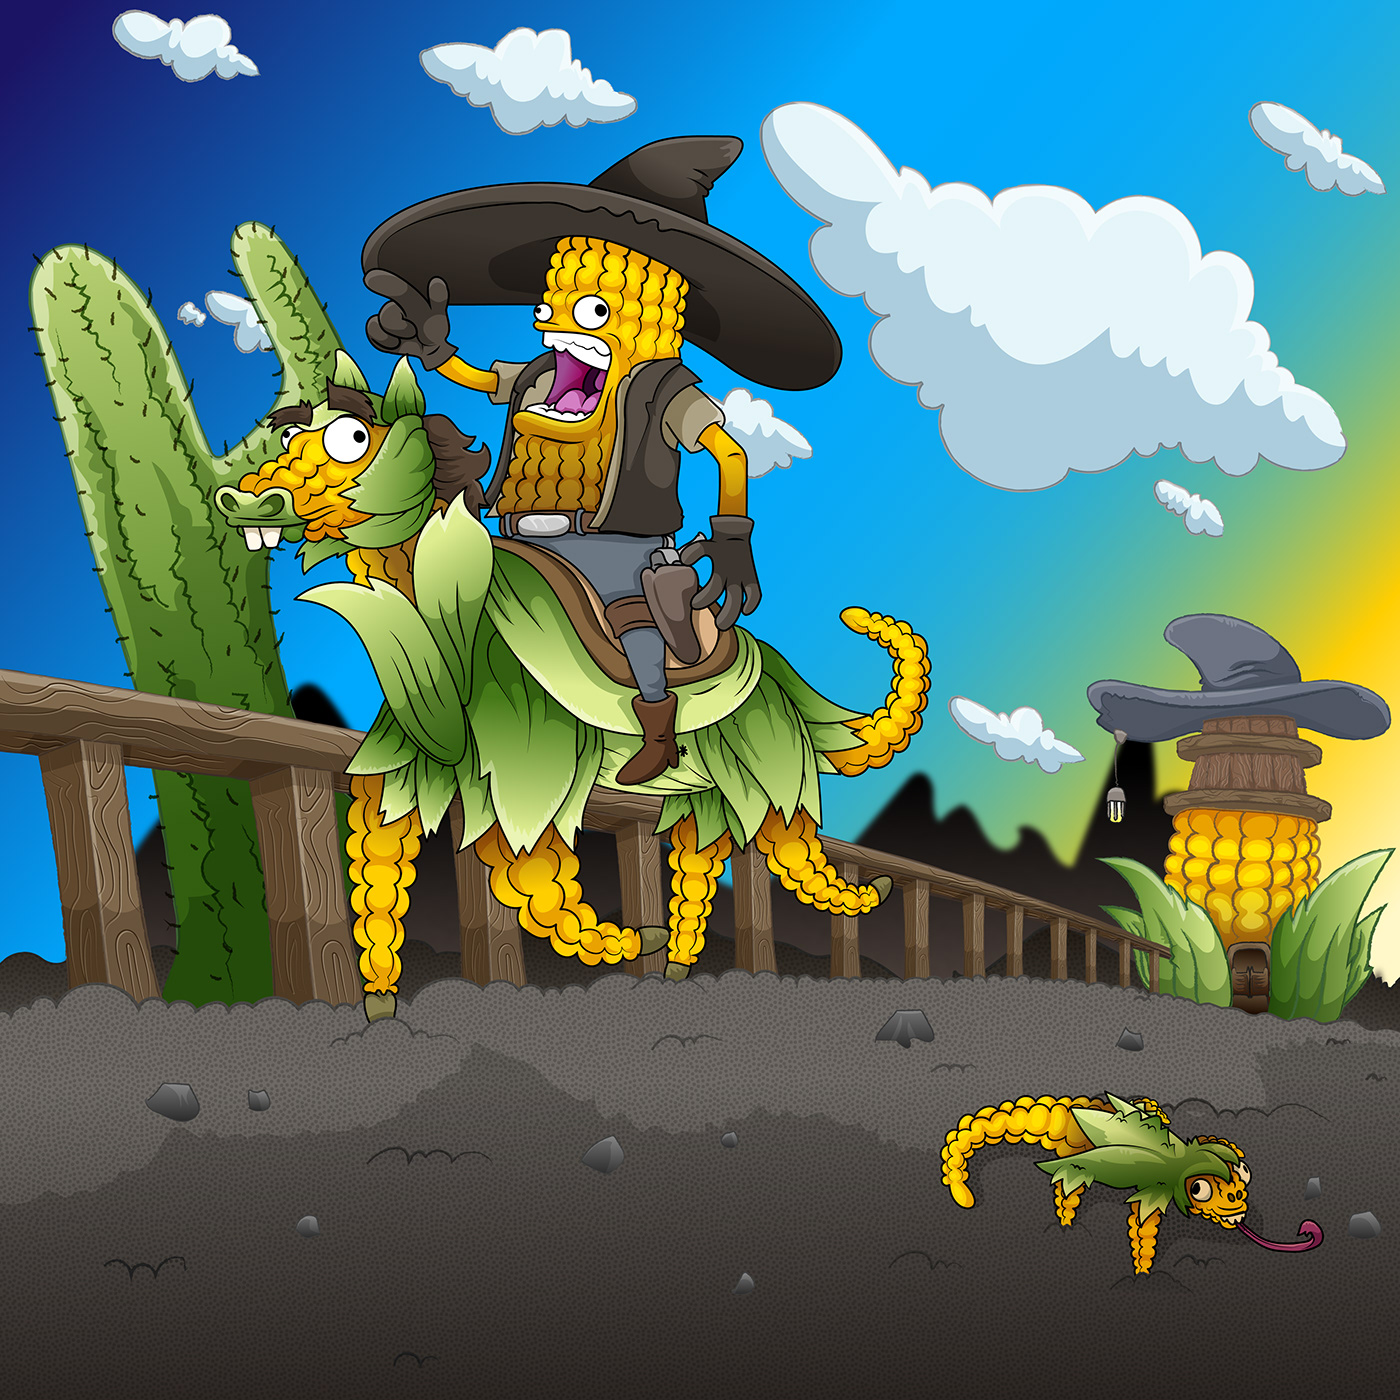 Elote vaquero / Cowboy corn